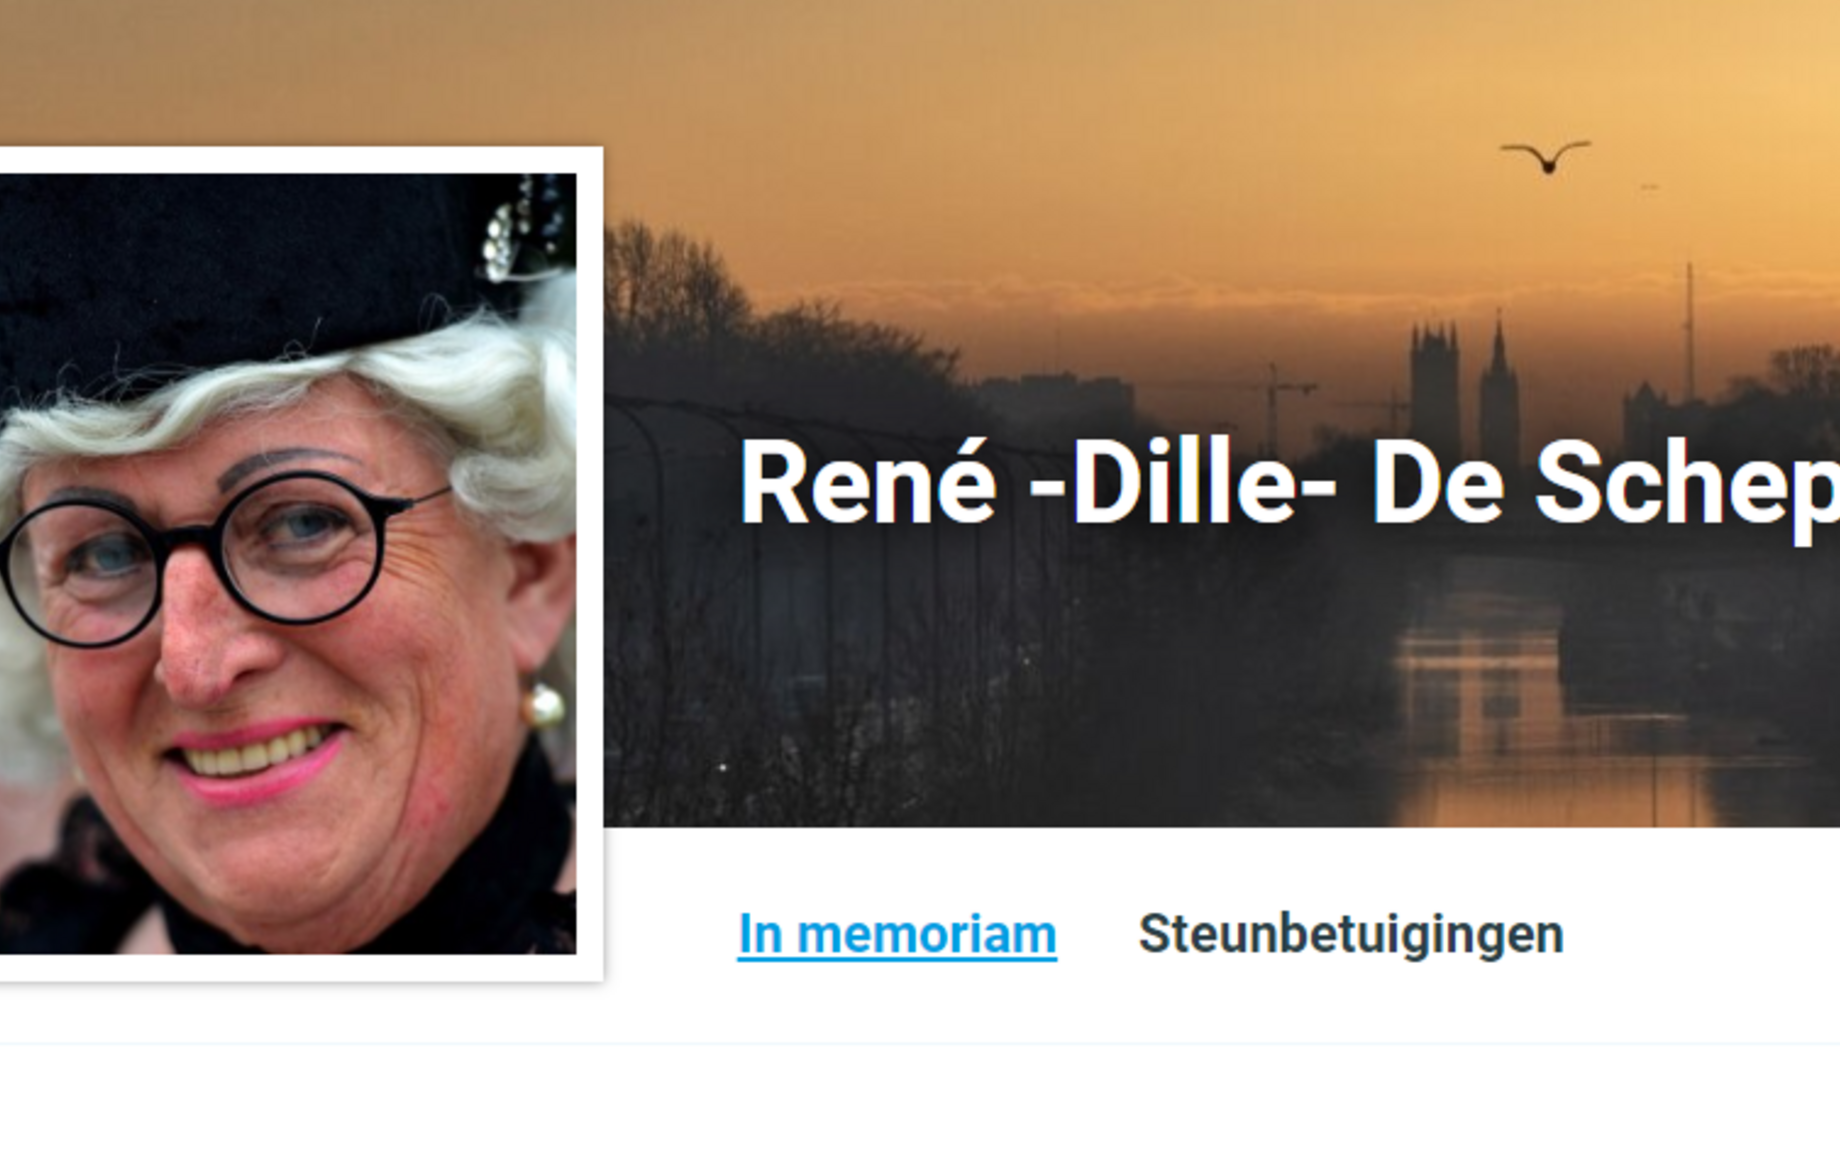 René 'Dille' De Schepper